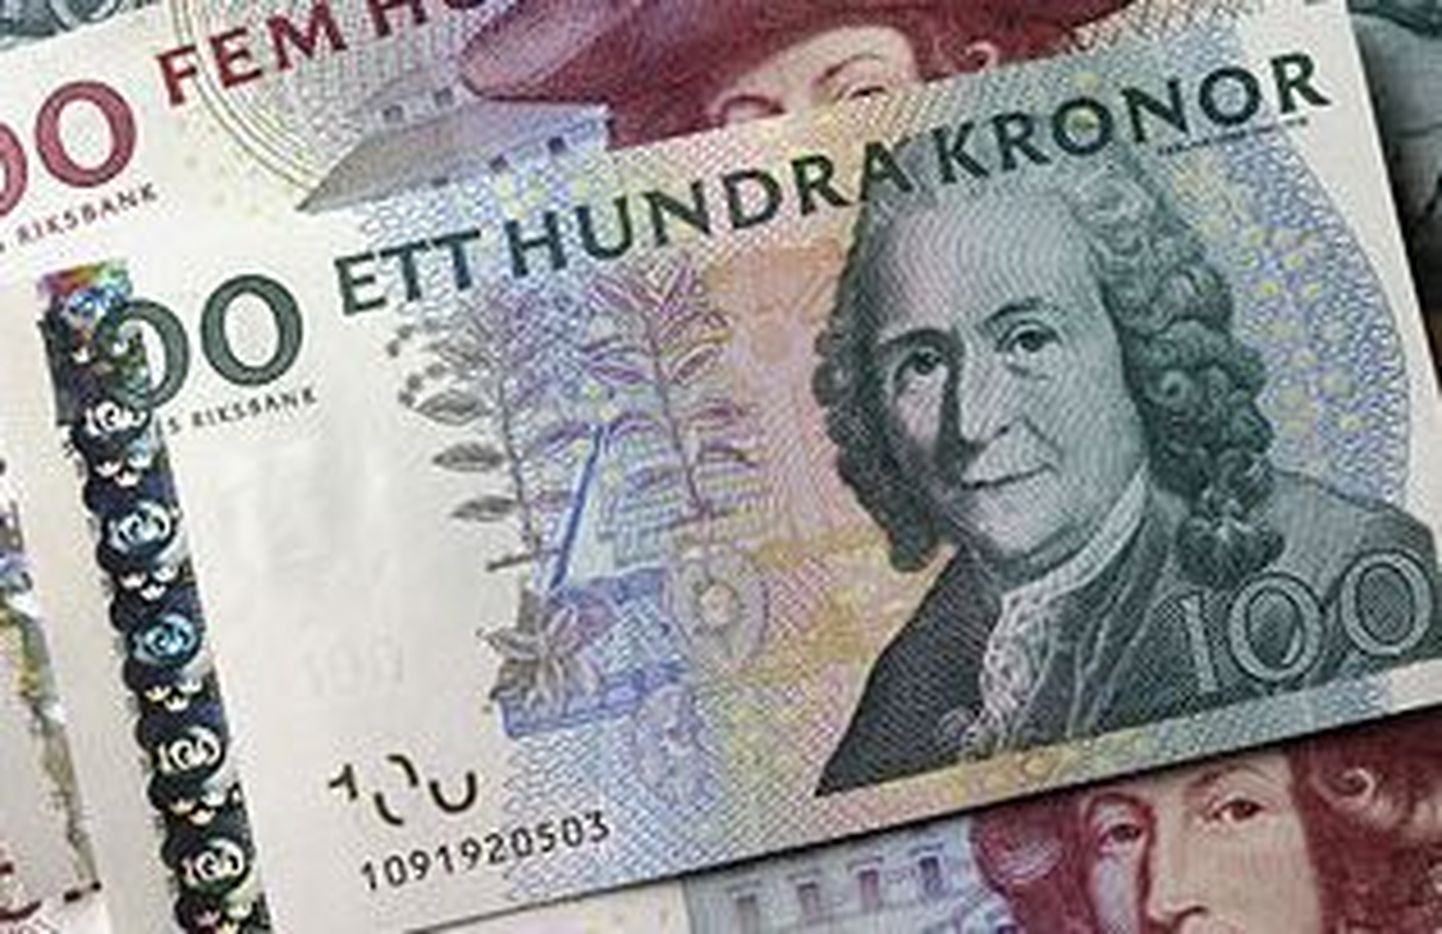 Rootsi marjulised leidsid metsast 100 000 krooni